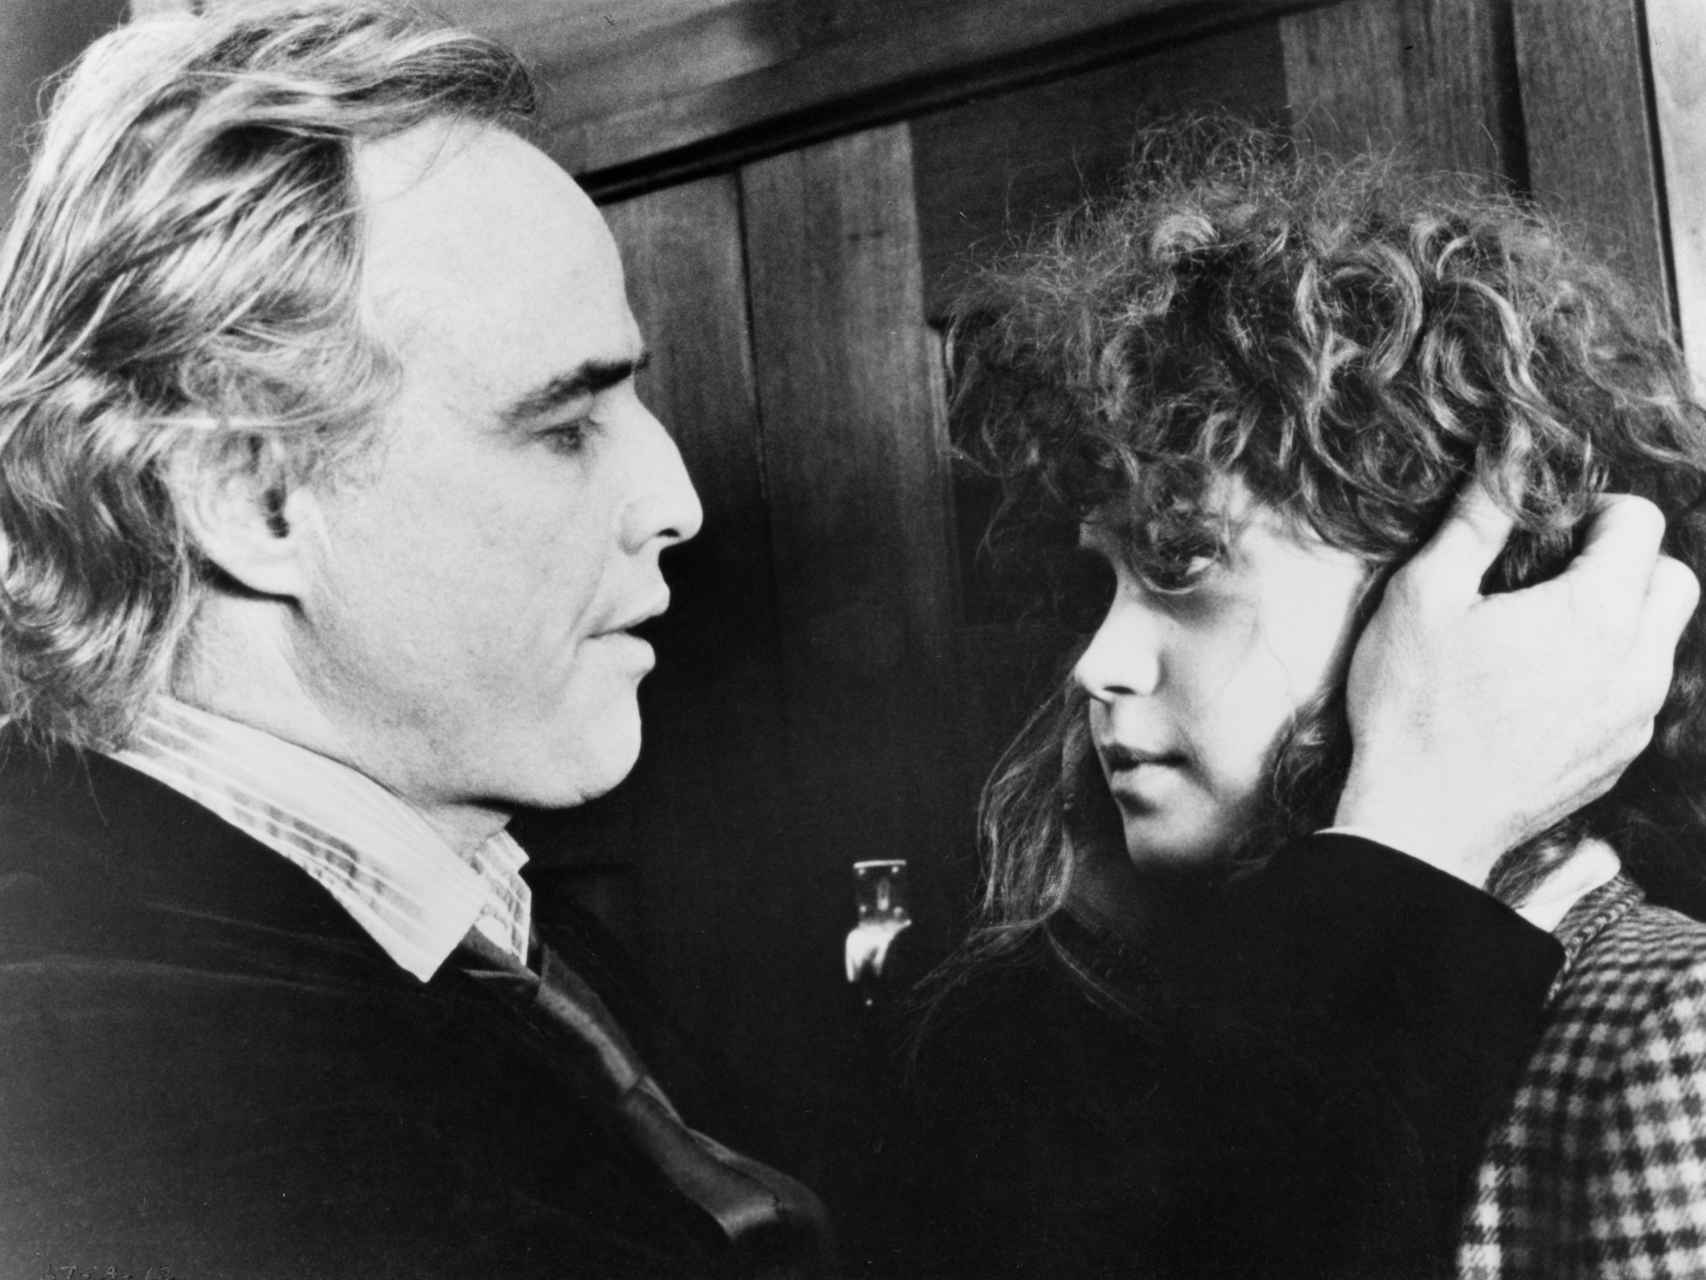 la actriz junto a Marlon Brando en una de las escenas del filme.